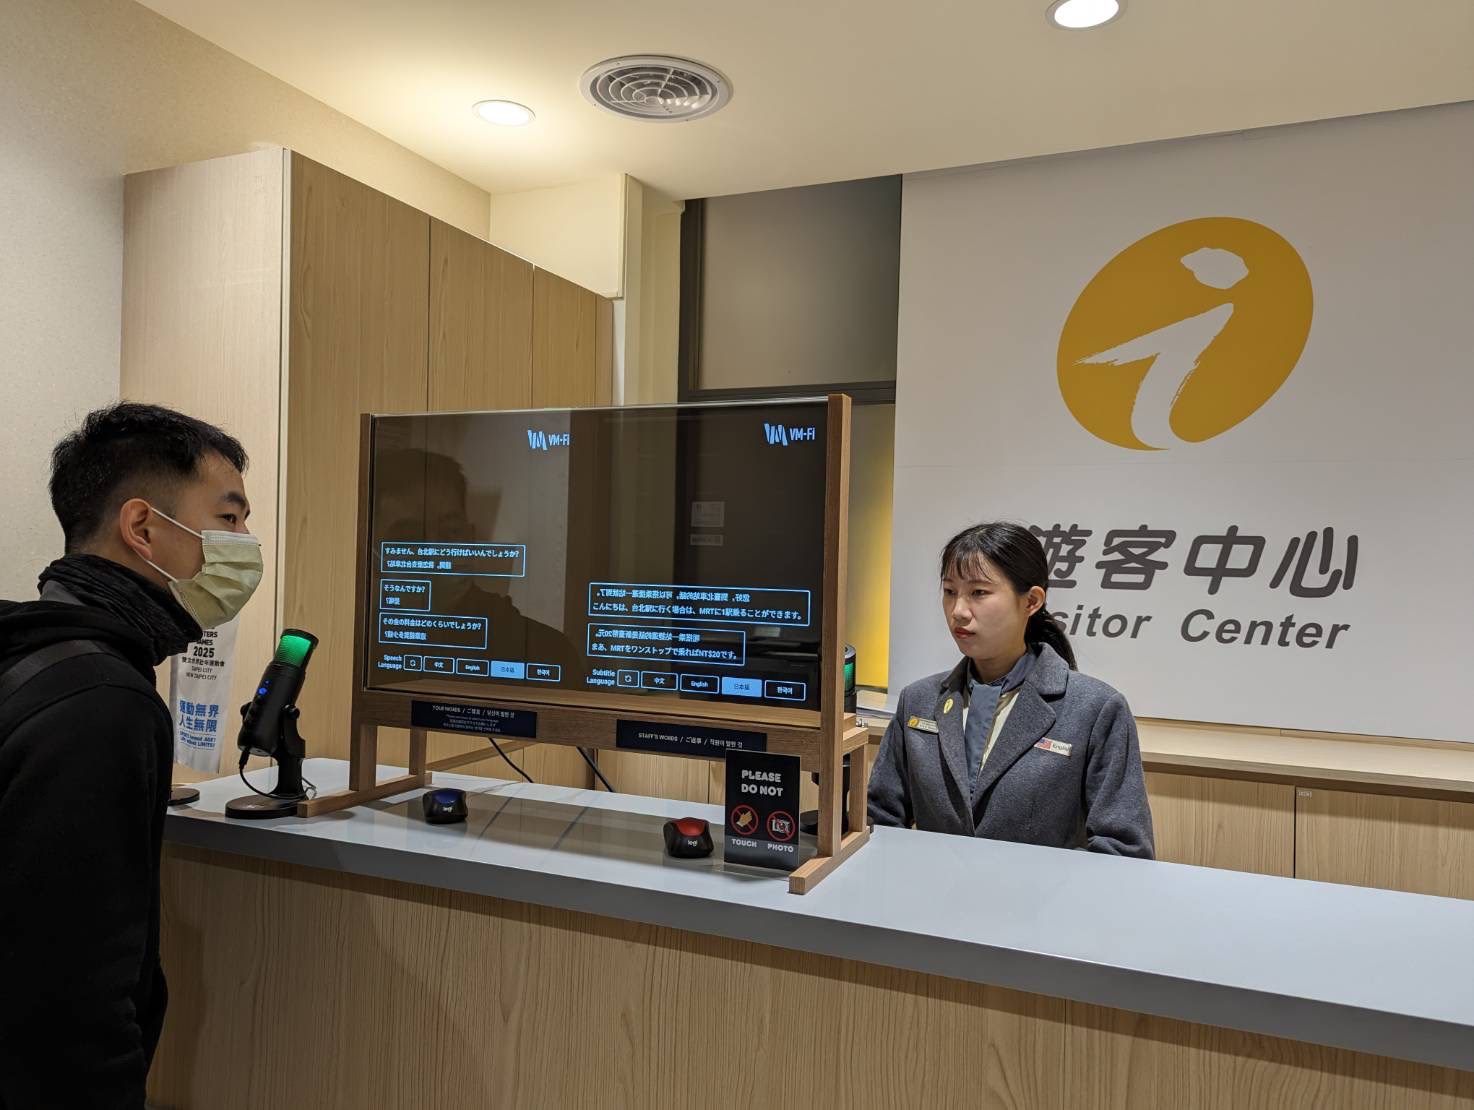 西門町遊客中心於台北燈節期間設置AI「智慧翻譯透明面板」即時翻譯服務，與外籍旅客面對面提供即時翻譯旅遊諮詢服務。